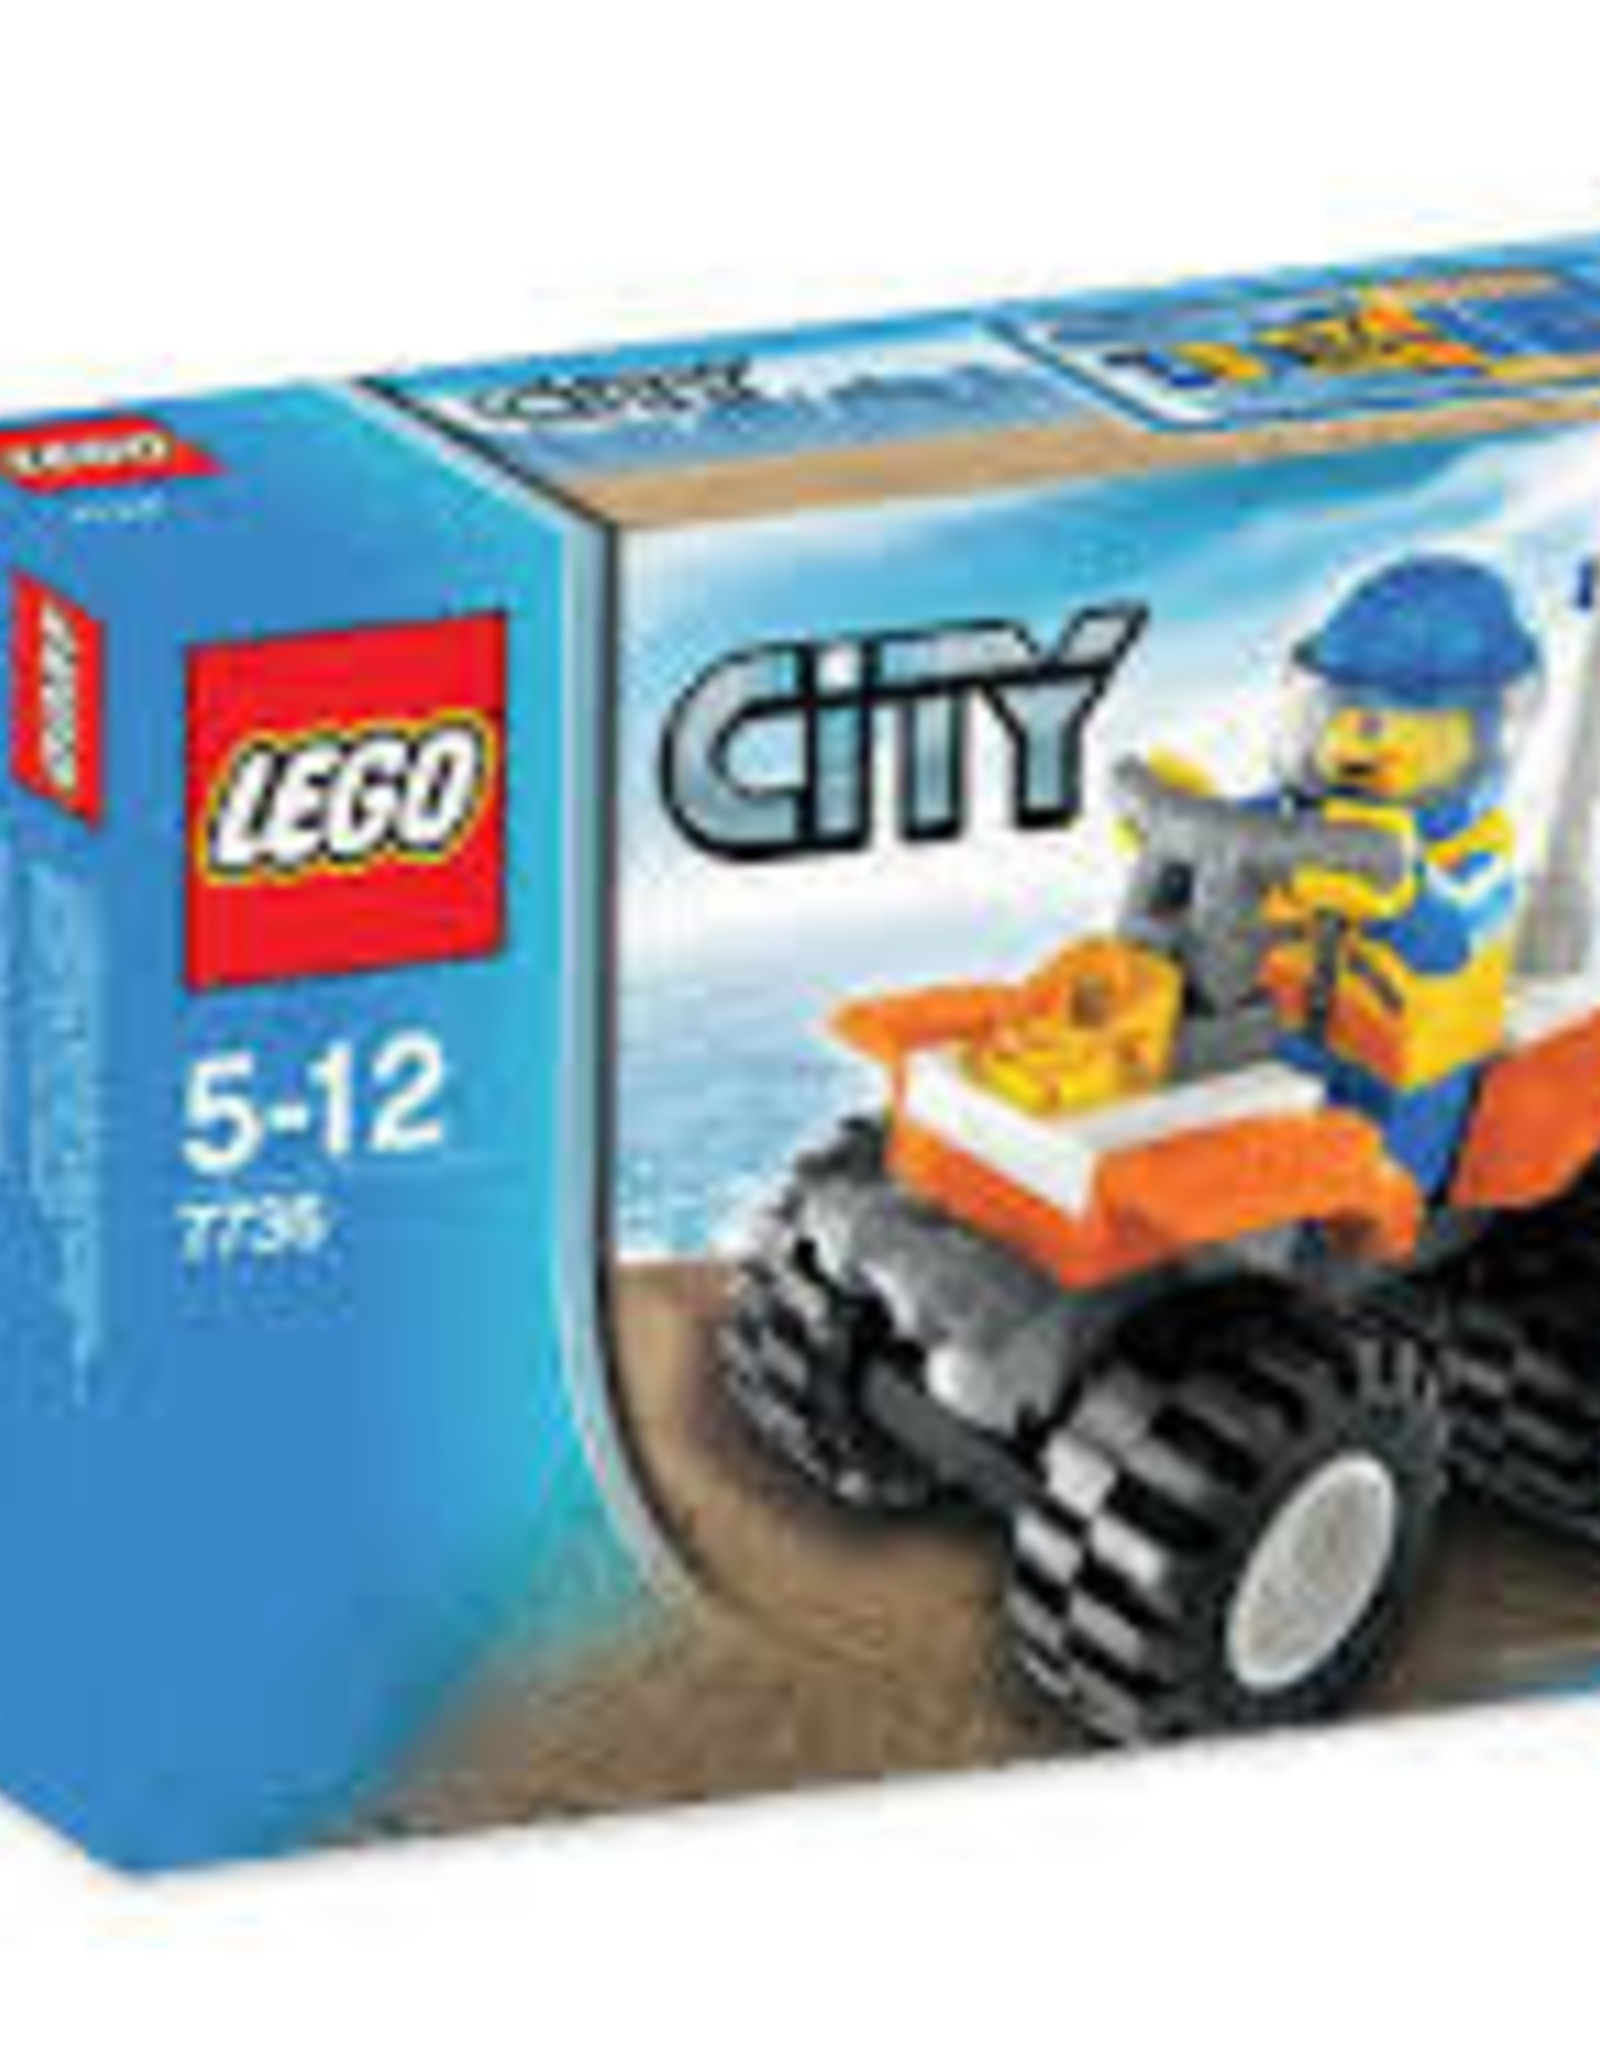 LEGO LEGO 7736 Coast Guard Quad Bike CITY